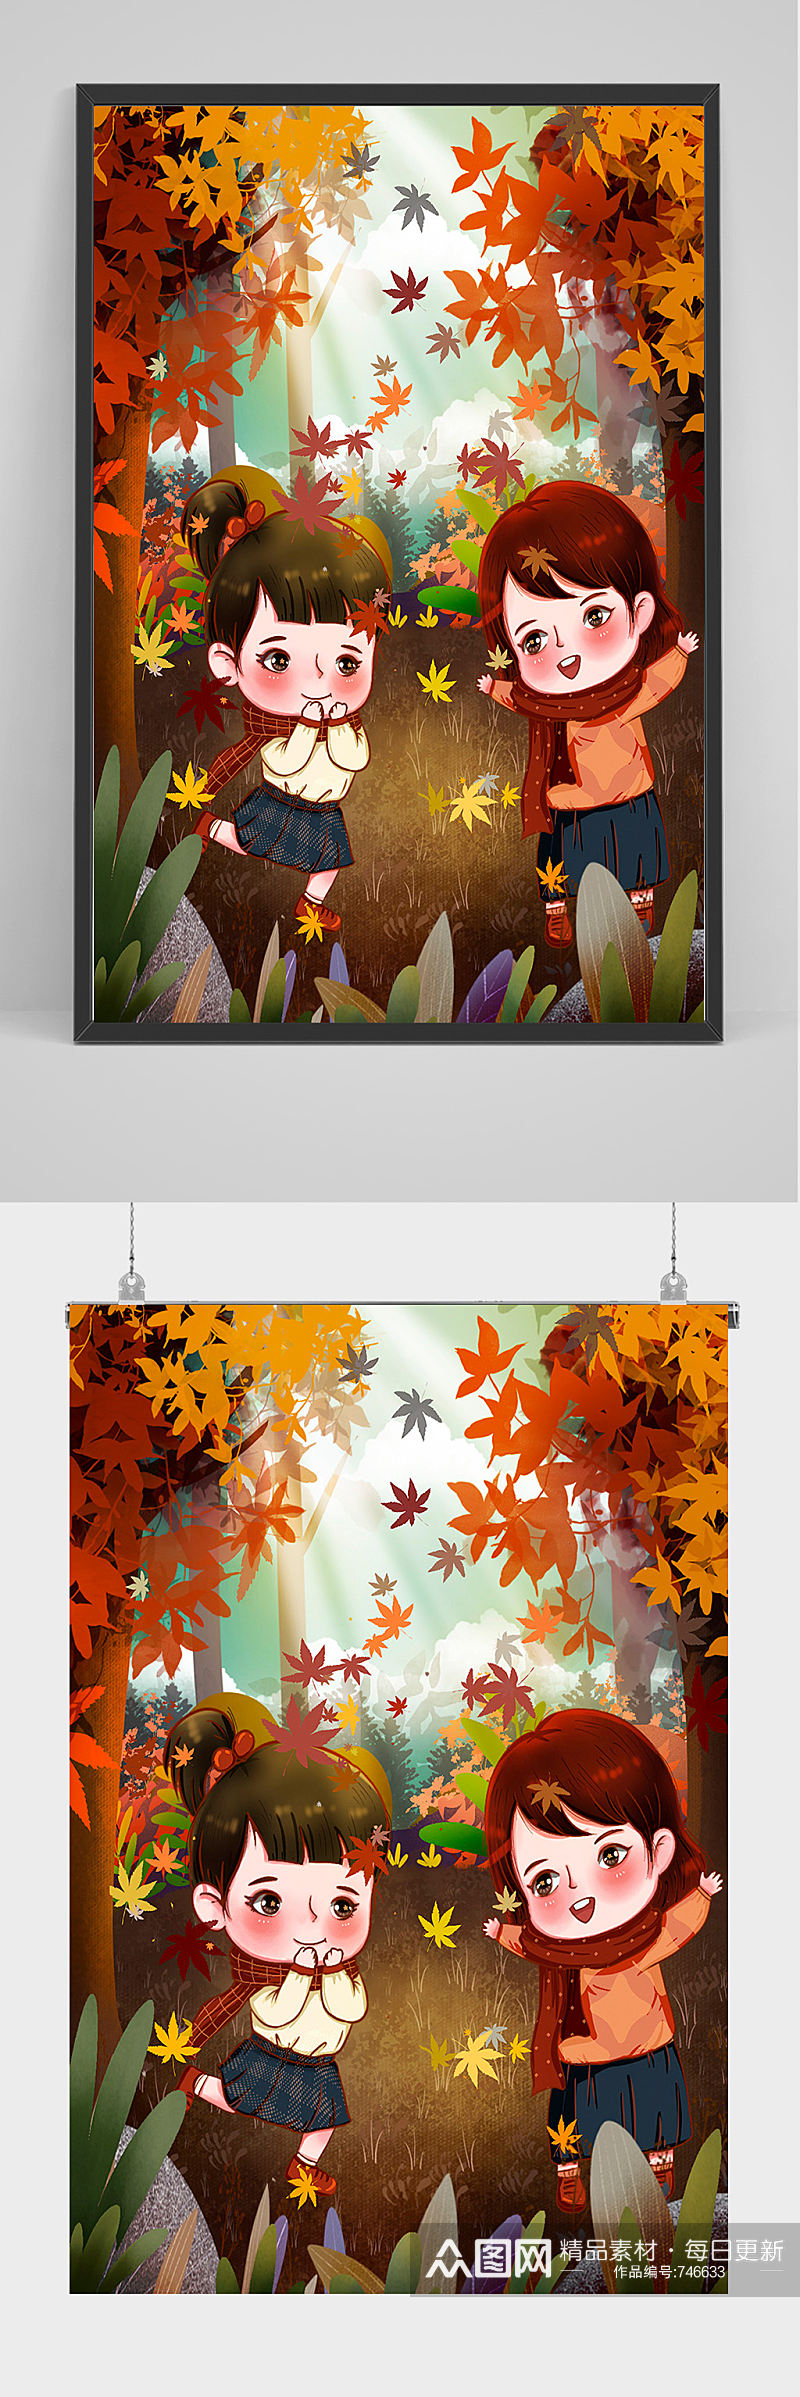 秋季枫叶树林中的女孩插画设计素材